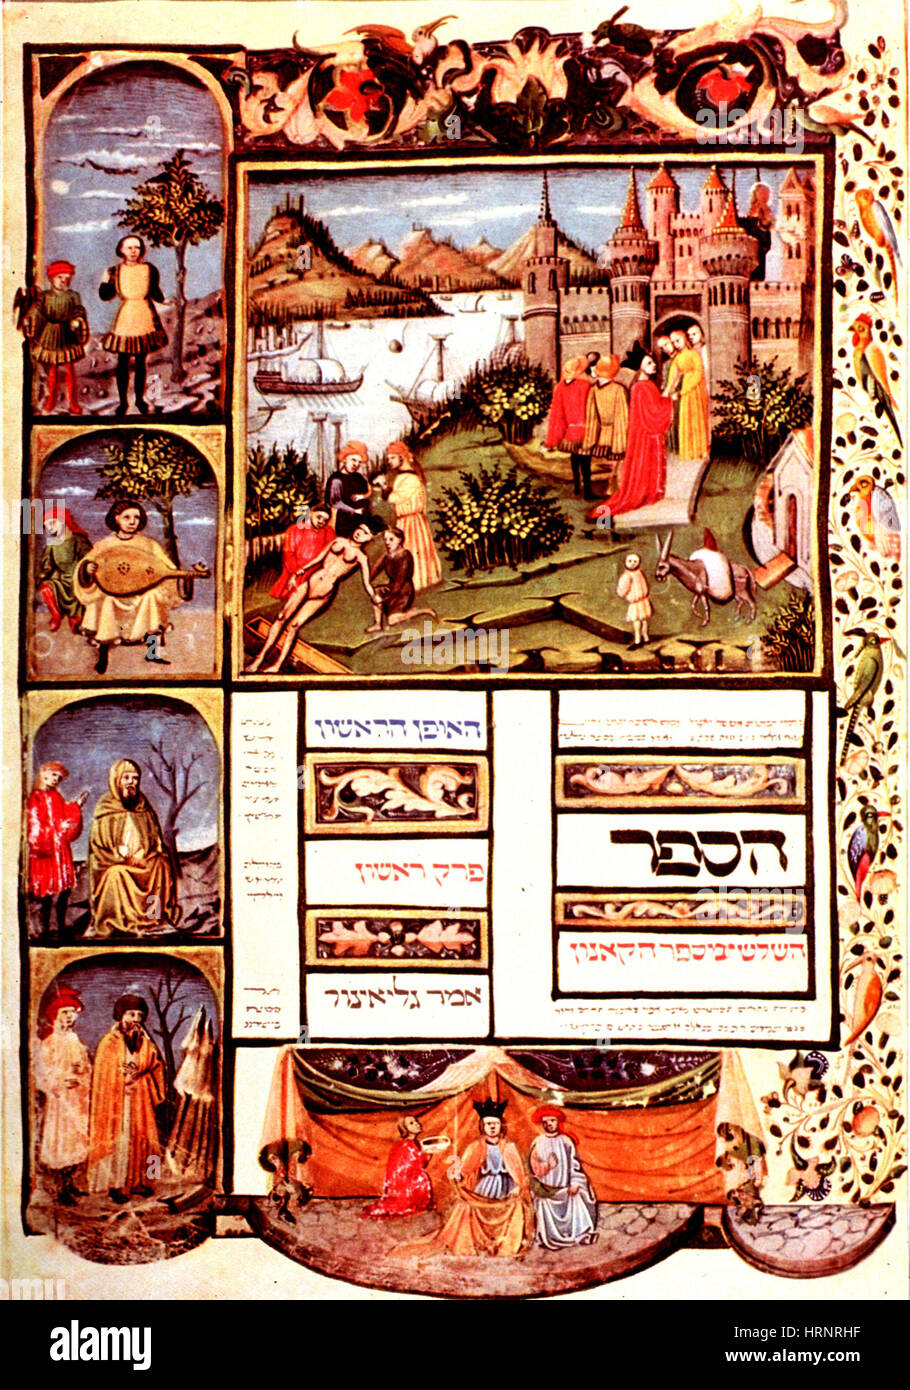 Avicenna del canonico della medicina, Edizione medievale Foto Stock